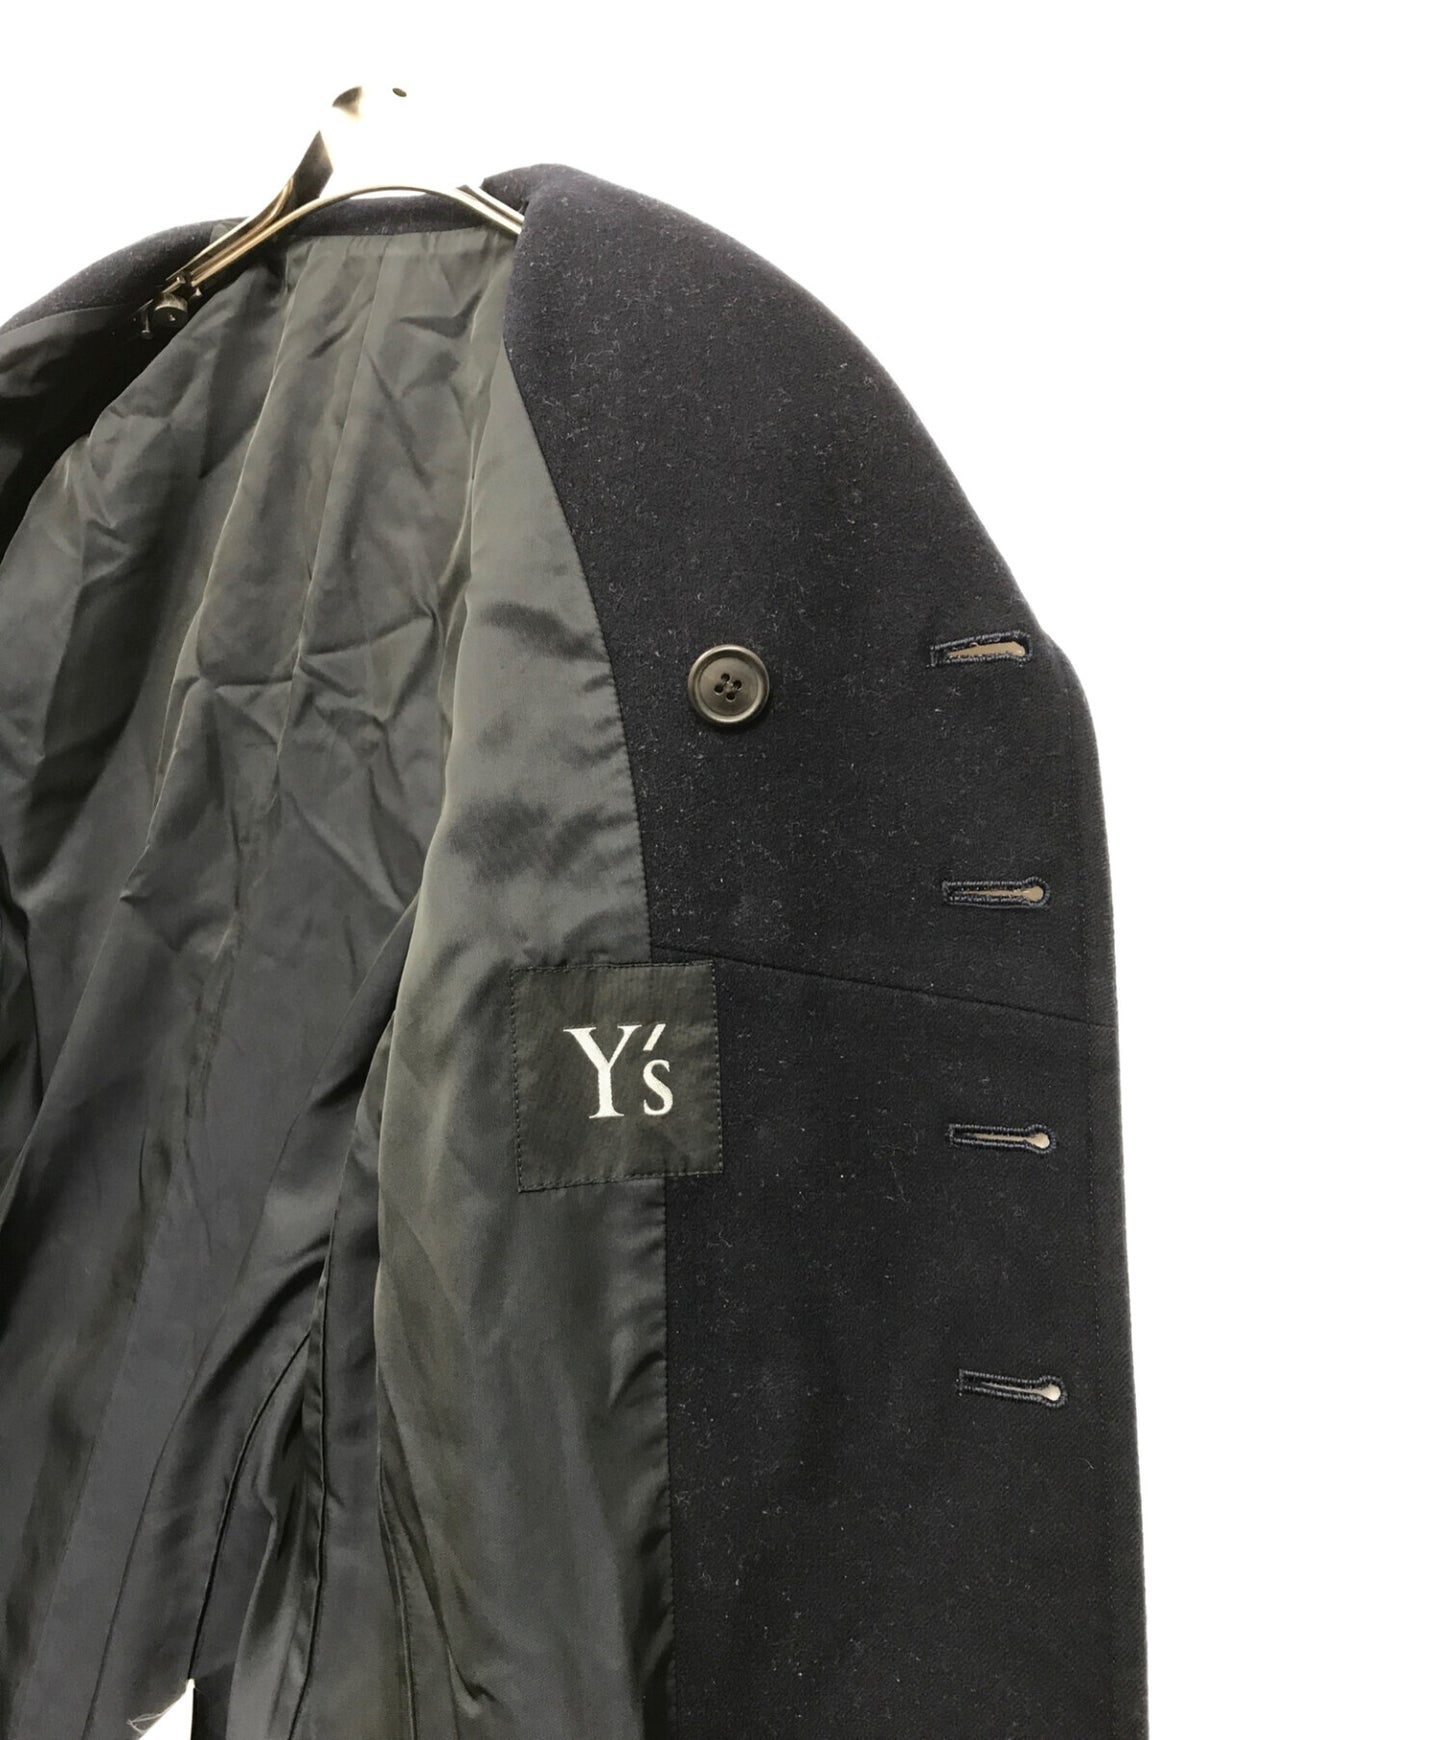 การออกแบบของ y coat yn-j53-110